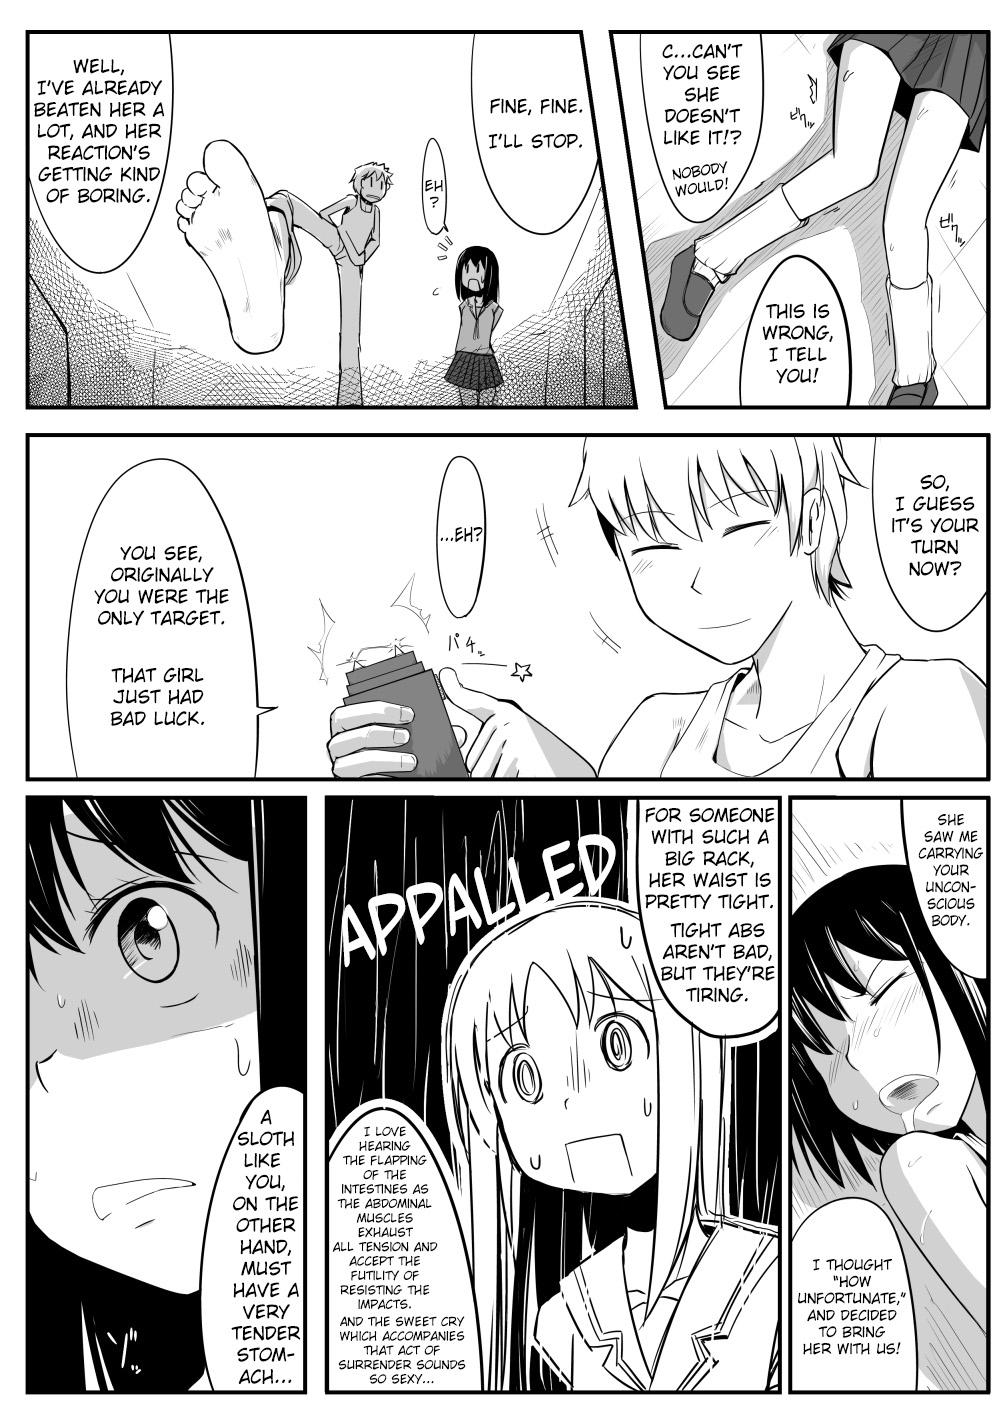 Older Manga About Viciously Beating Osaka’s Stomach - Azumanga daioh Fuck - Page 5